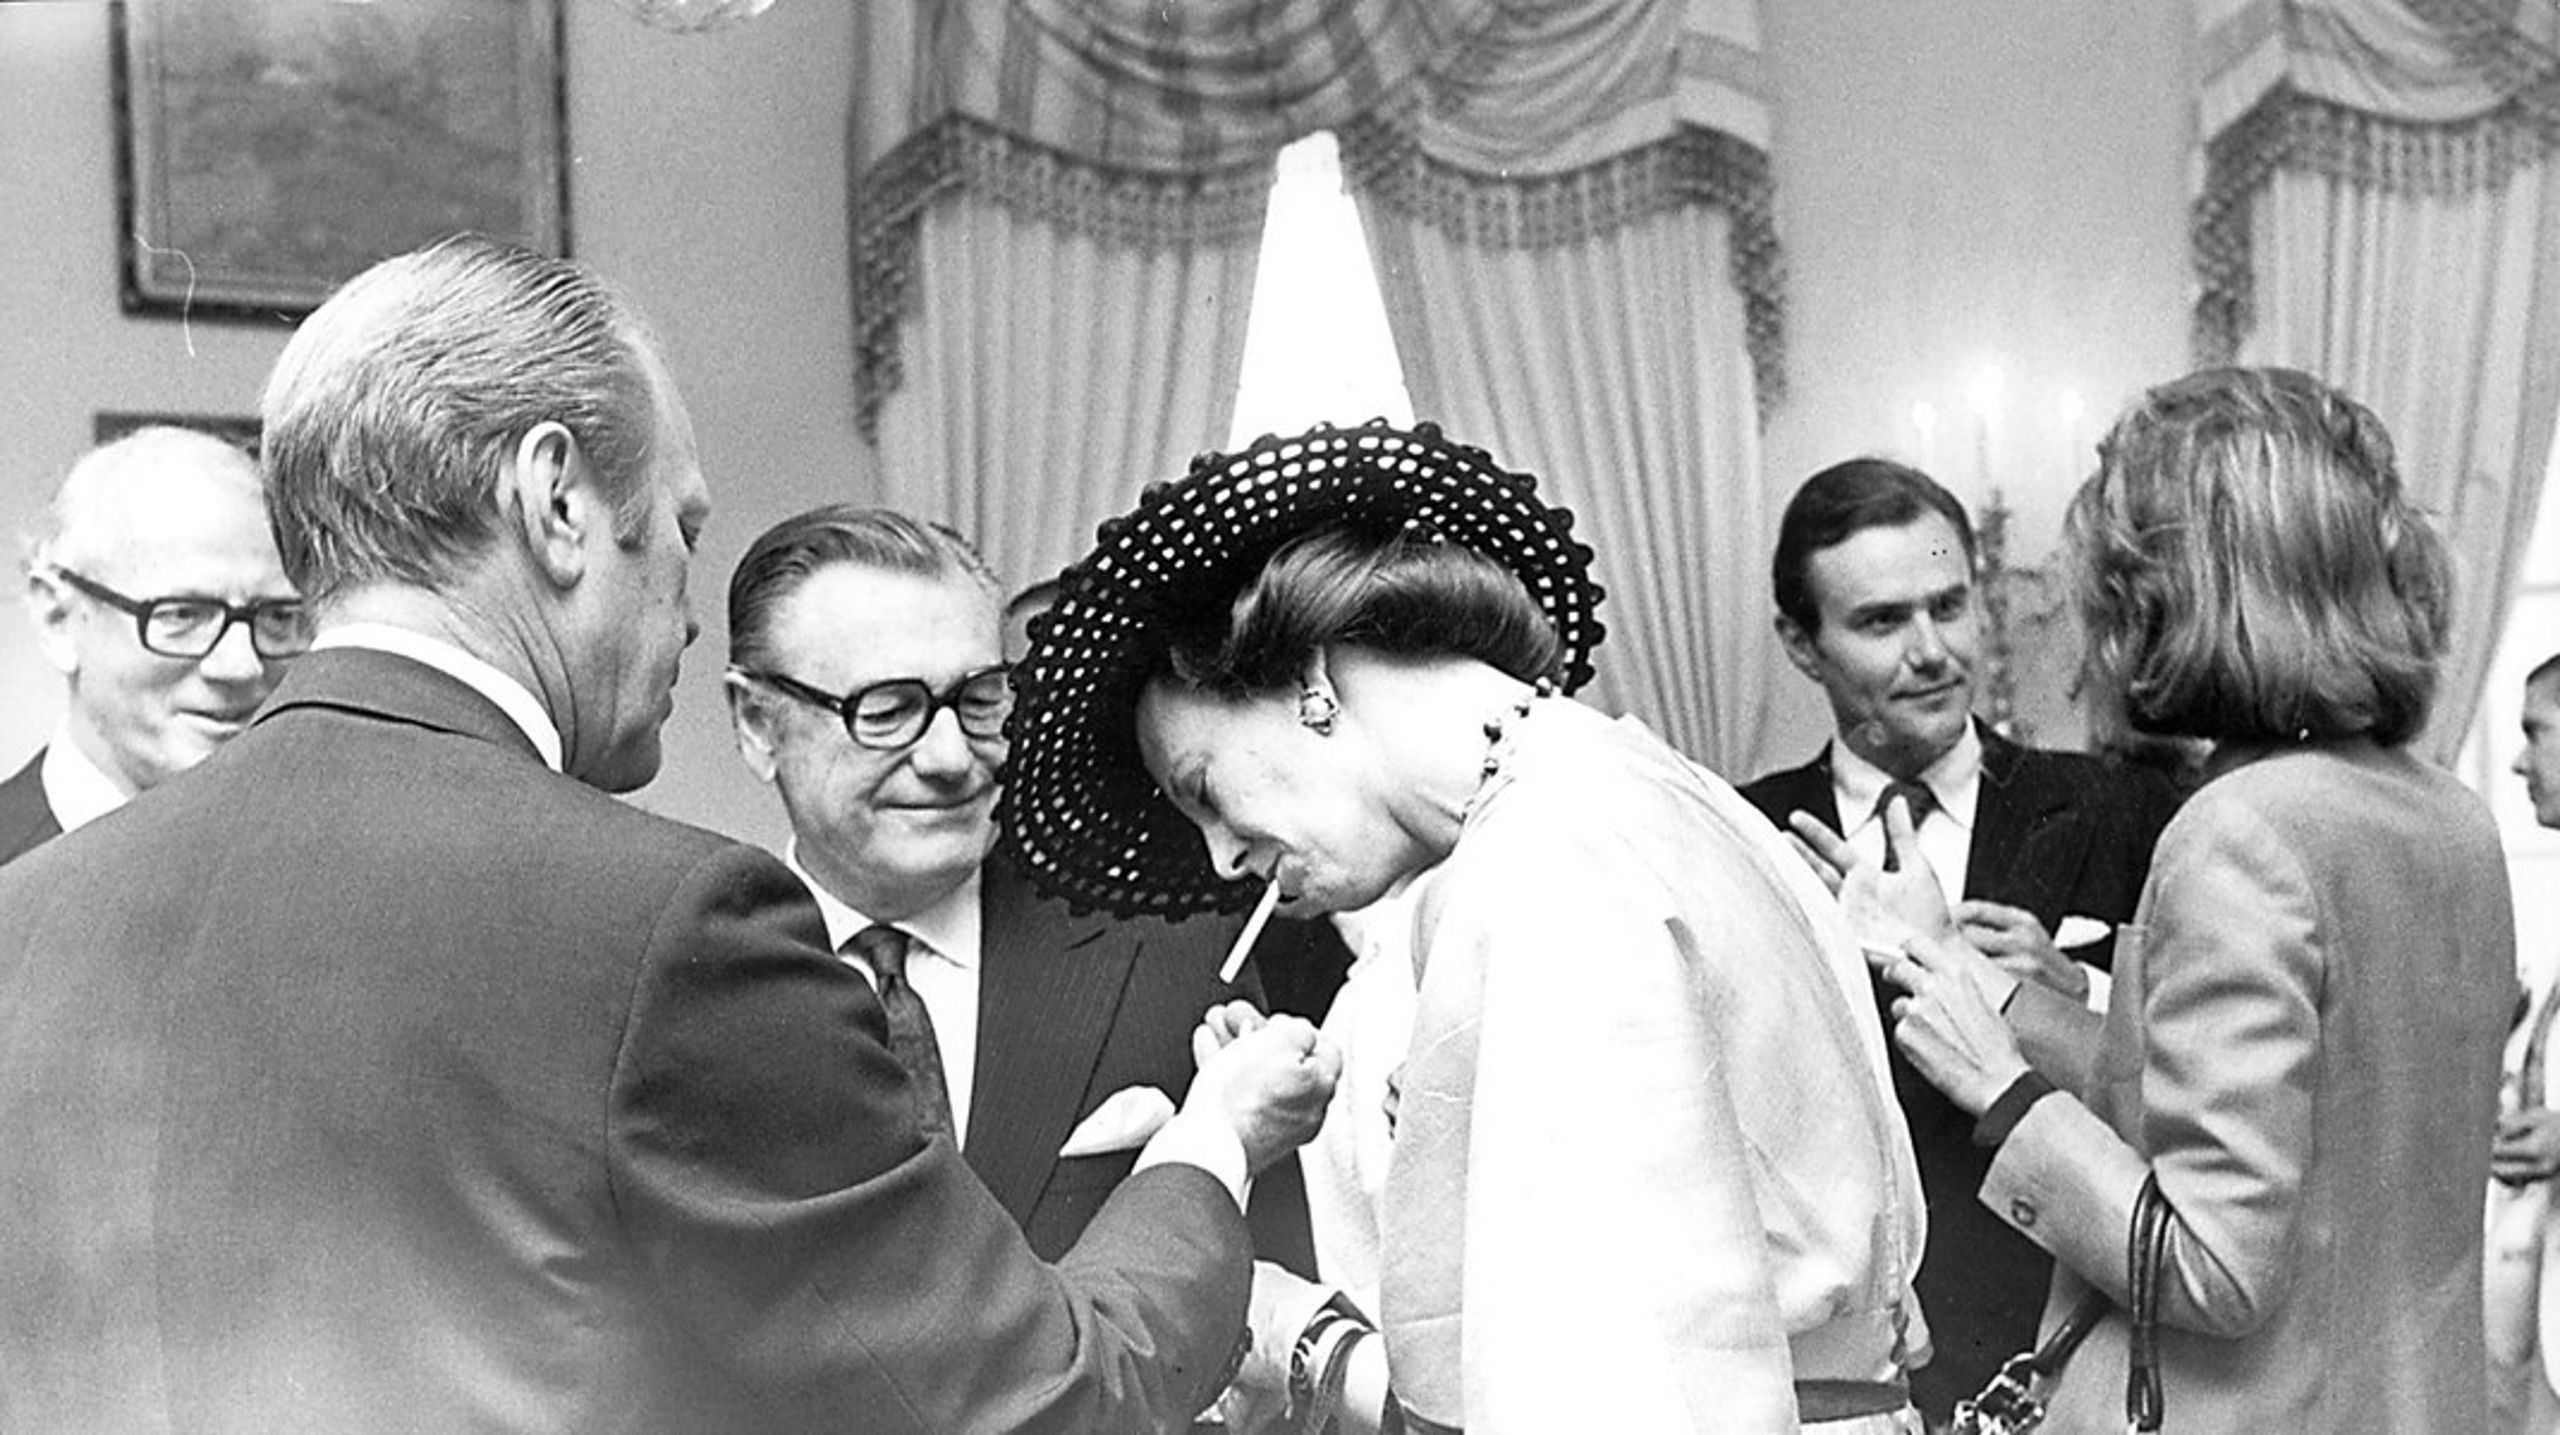 Dronningen har været vidt omkring. Her tænder den tidligere
amerikanske præsident Gerald Ford hendes cigaret under et statsbesøg i USA. (Arkivfoto)